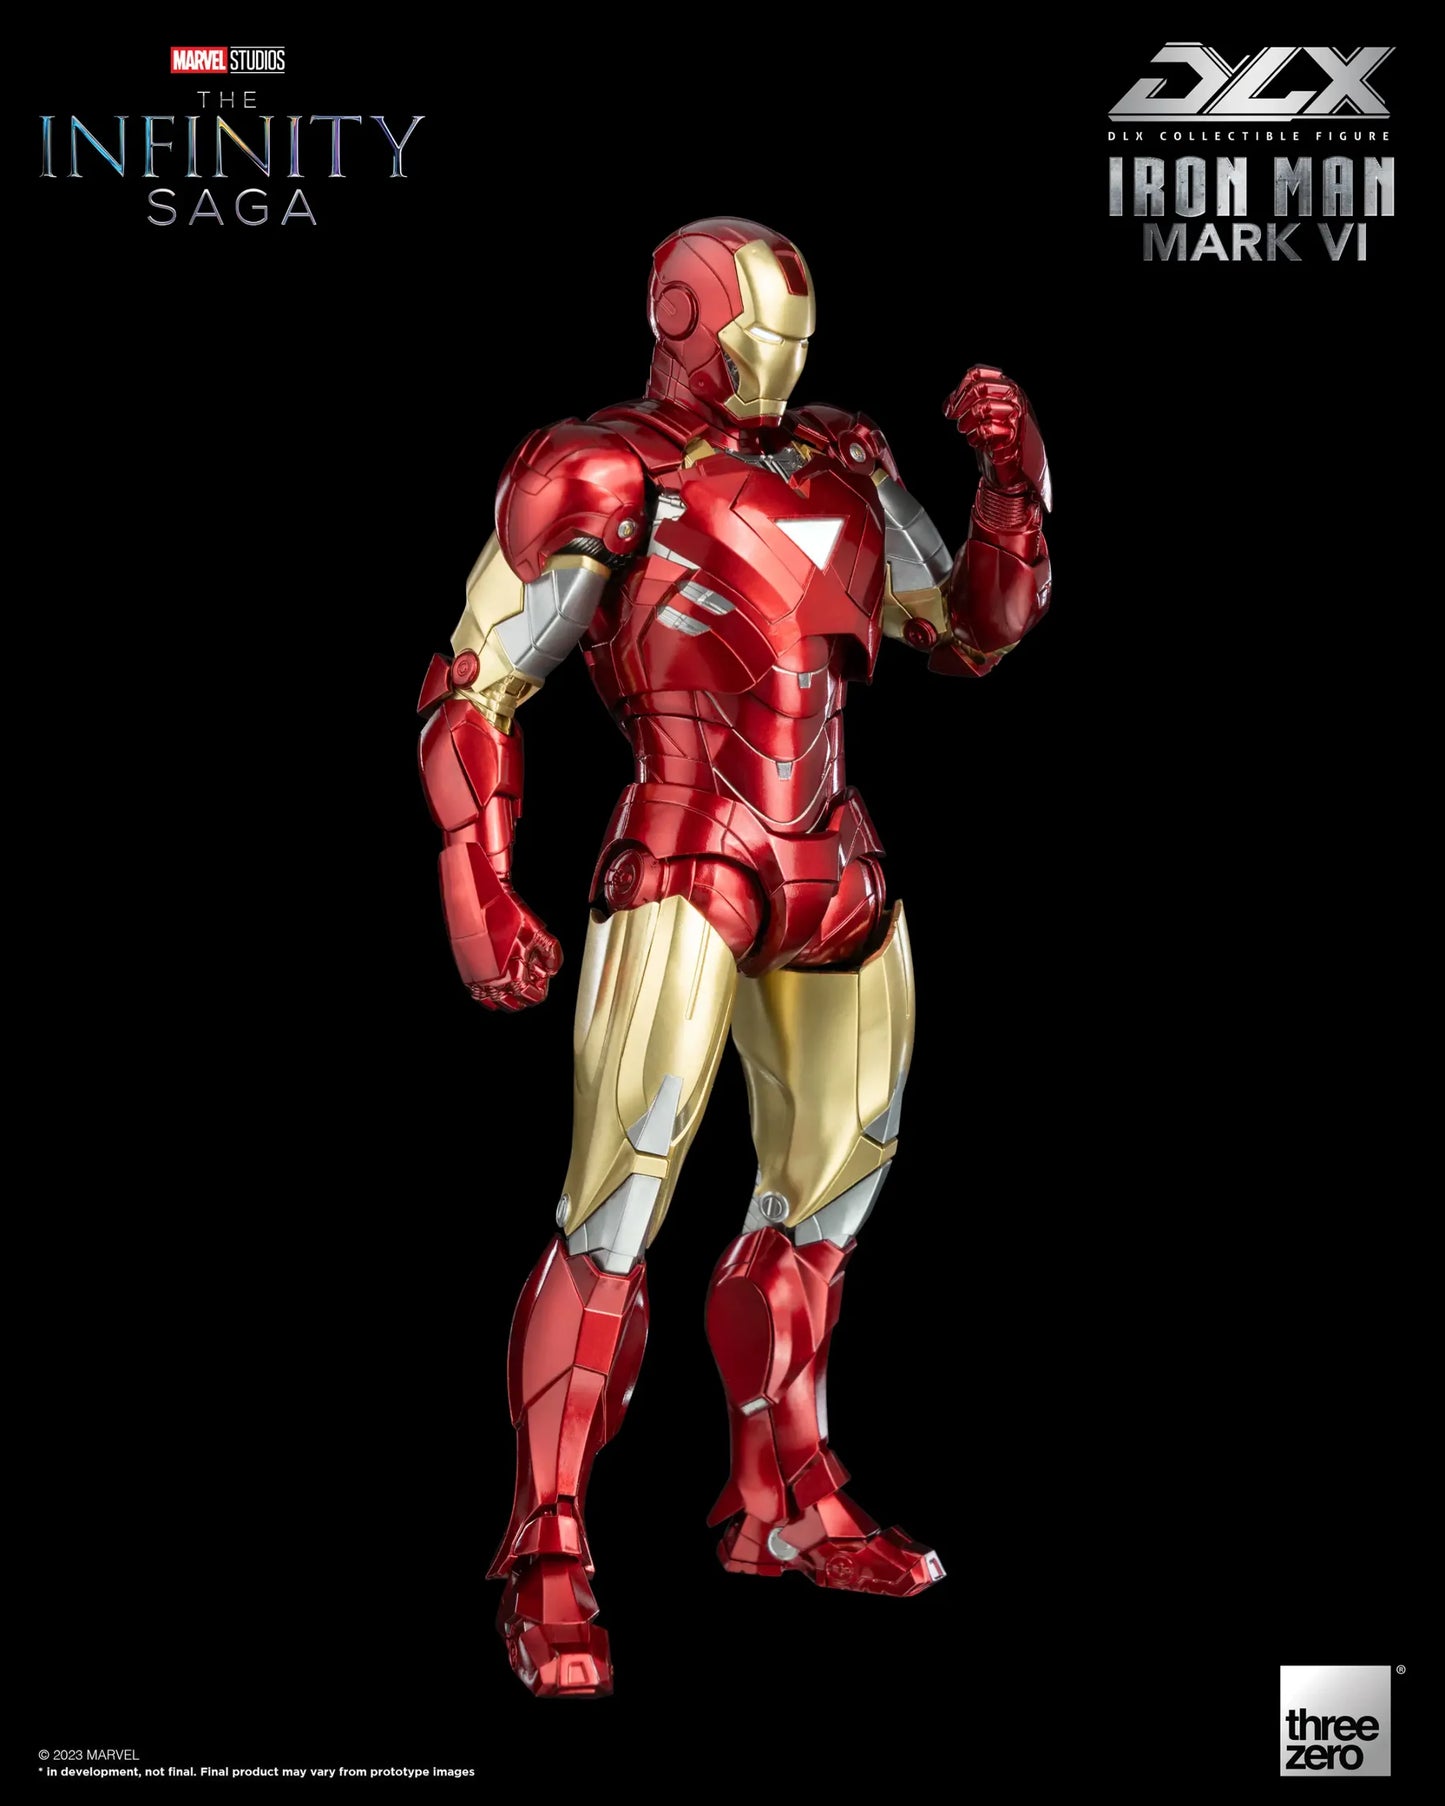 Preventa Figura DLX Iron Man Mark 6 - Marvel Studios: The Infinity Saga marca Threezero 3Z0500 escala pequeña 1/12